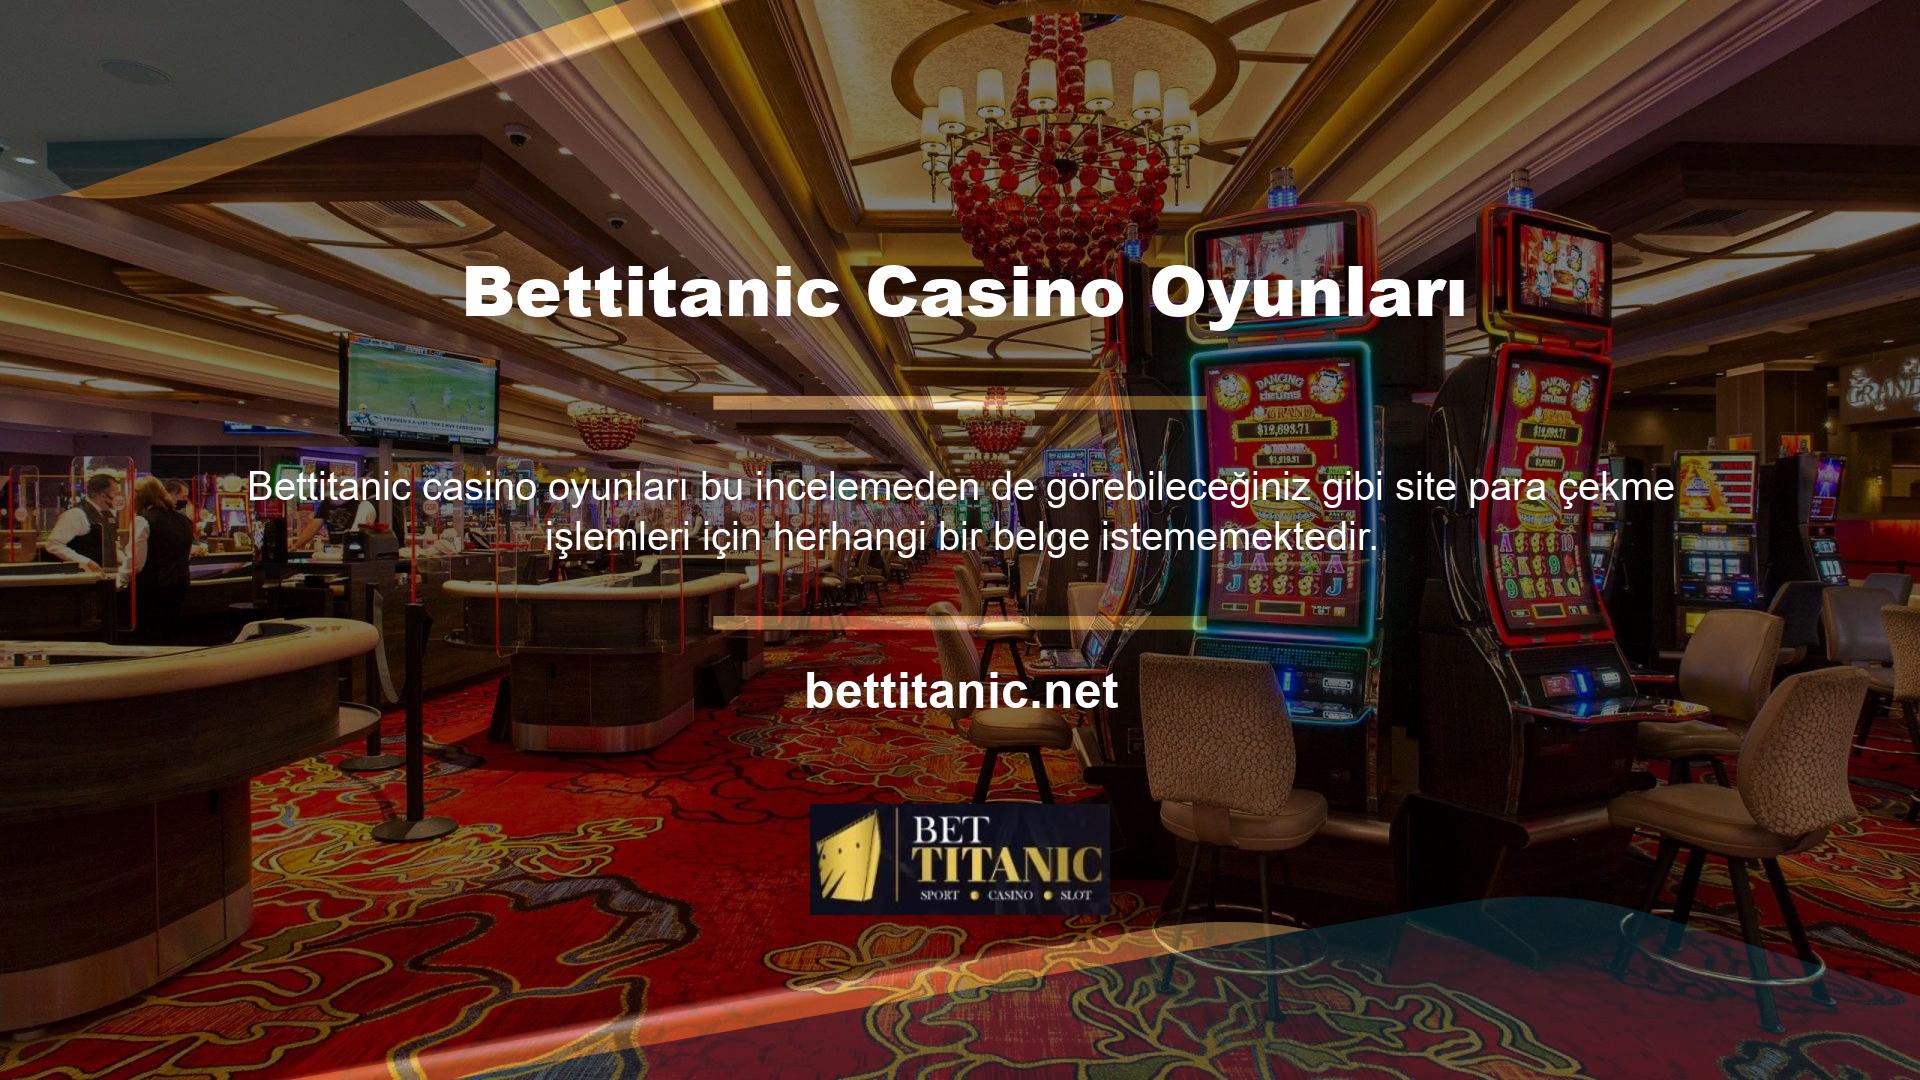 Bettitanic casino oyunları oldukça zengindir